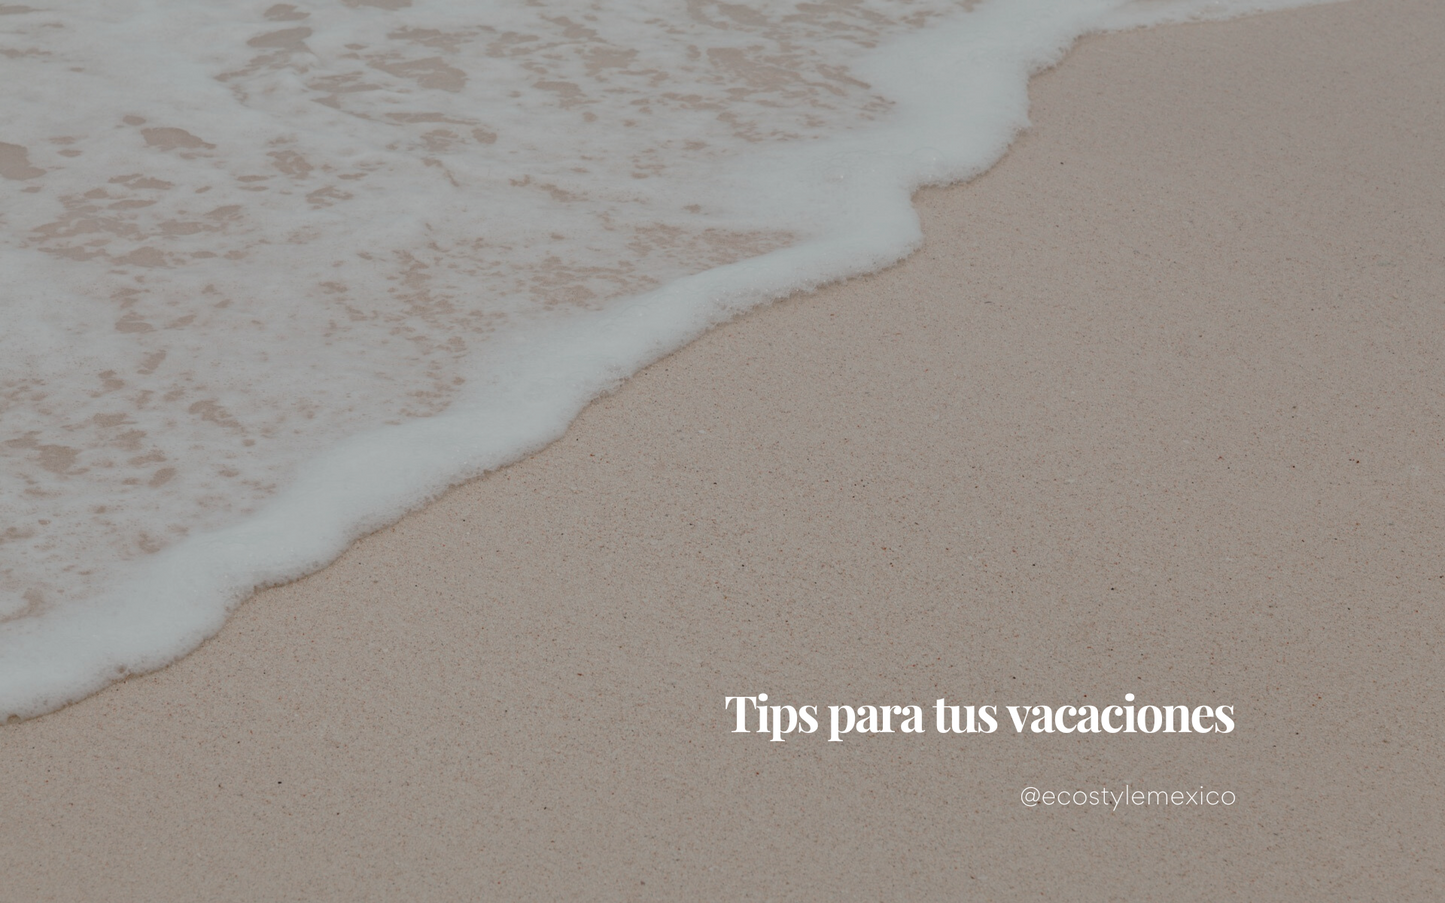 Tips para tus vacaciones